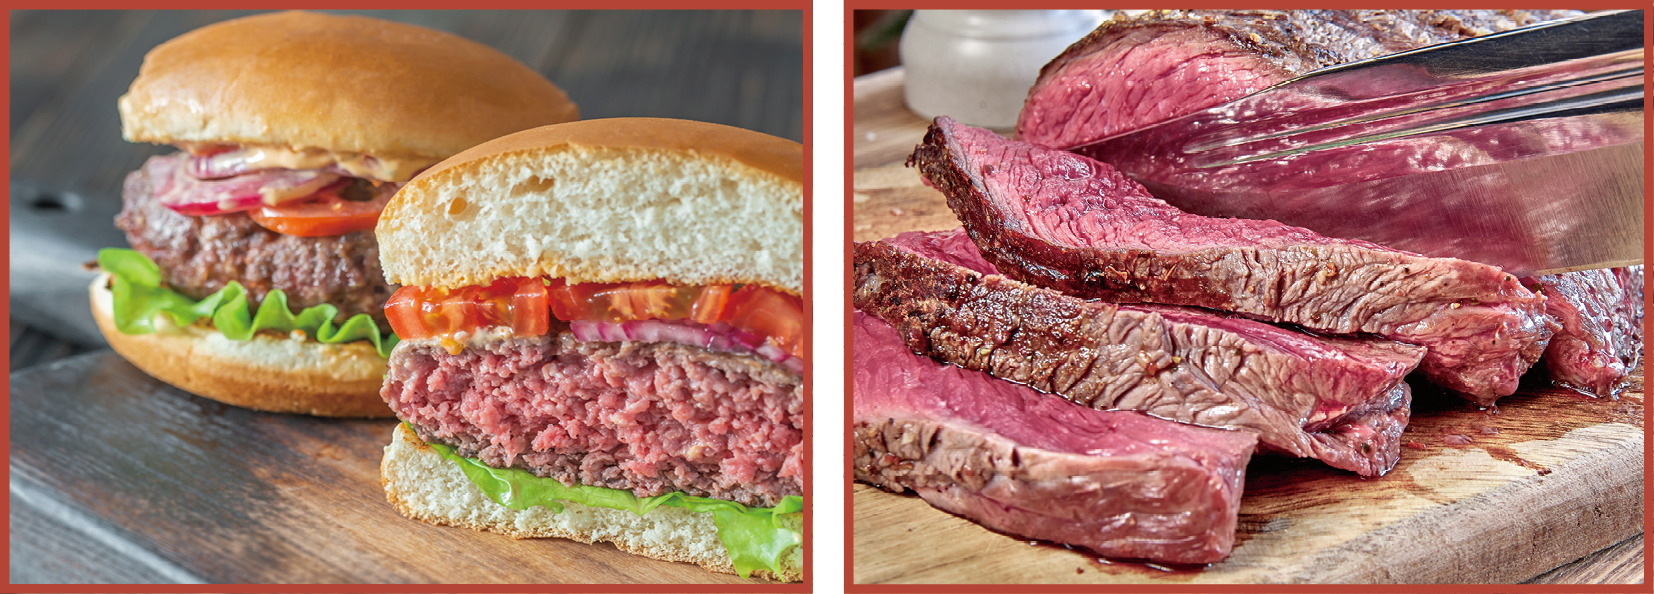 消费者不宜进食未经煮熟的汉堡牛肉或牛扒，以免食物中毒